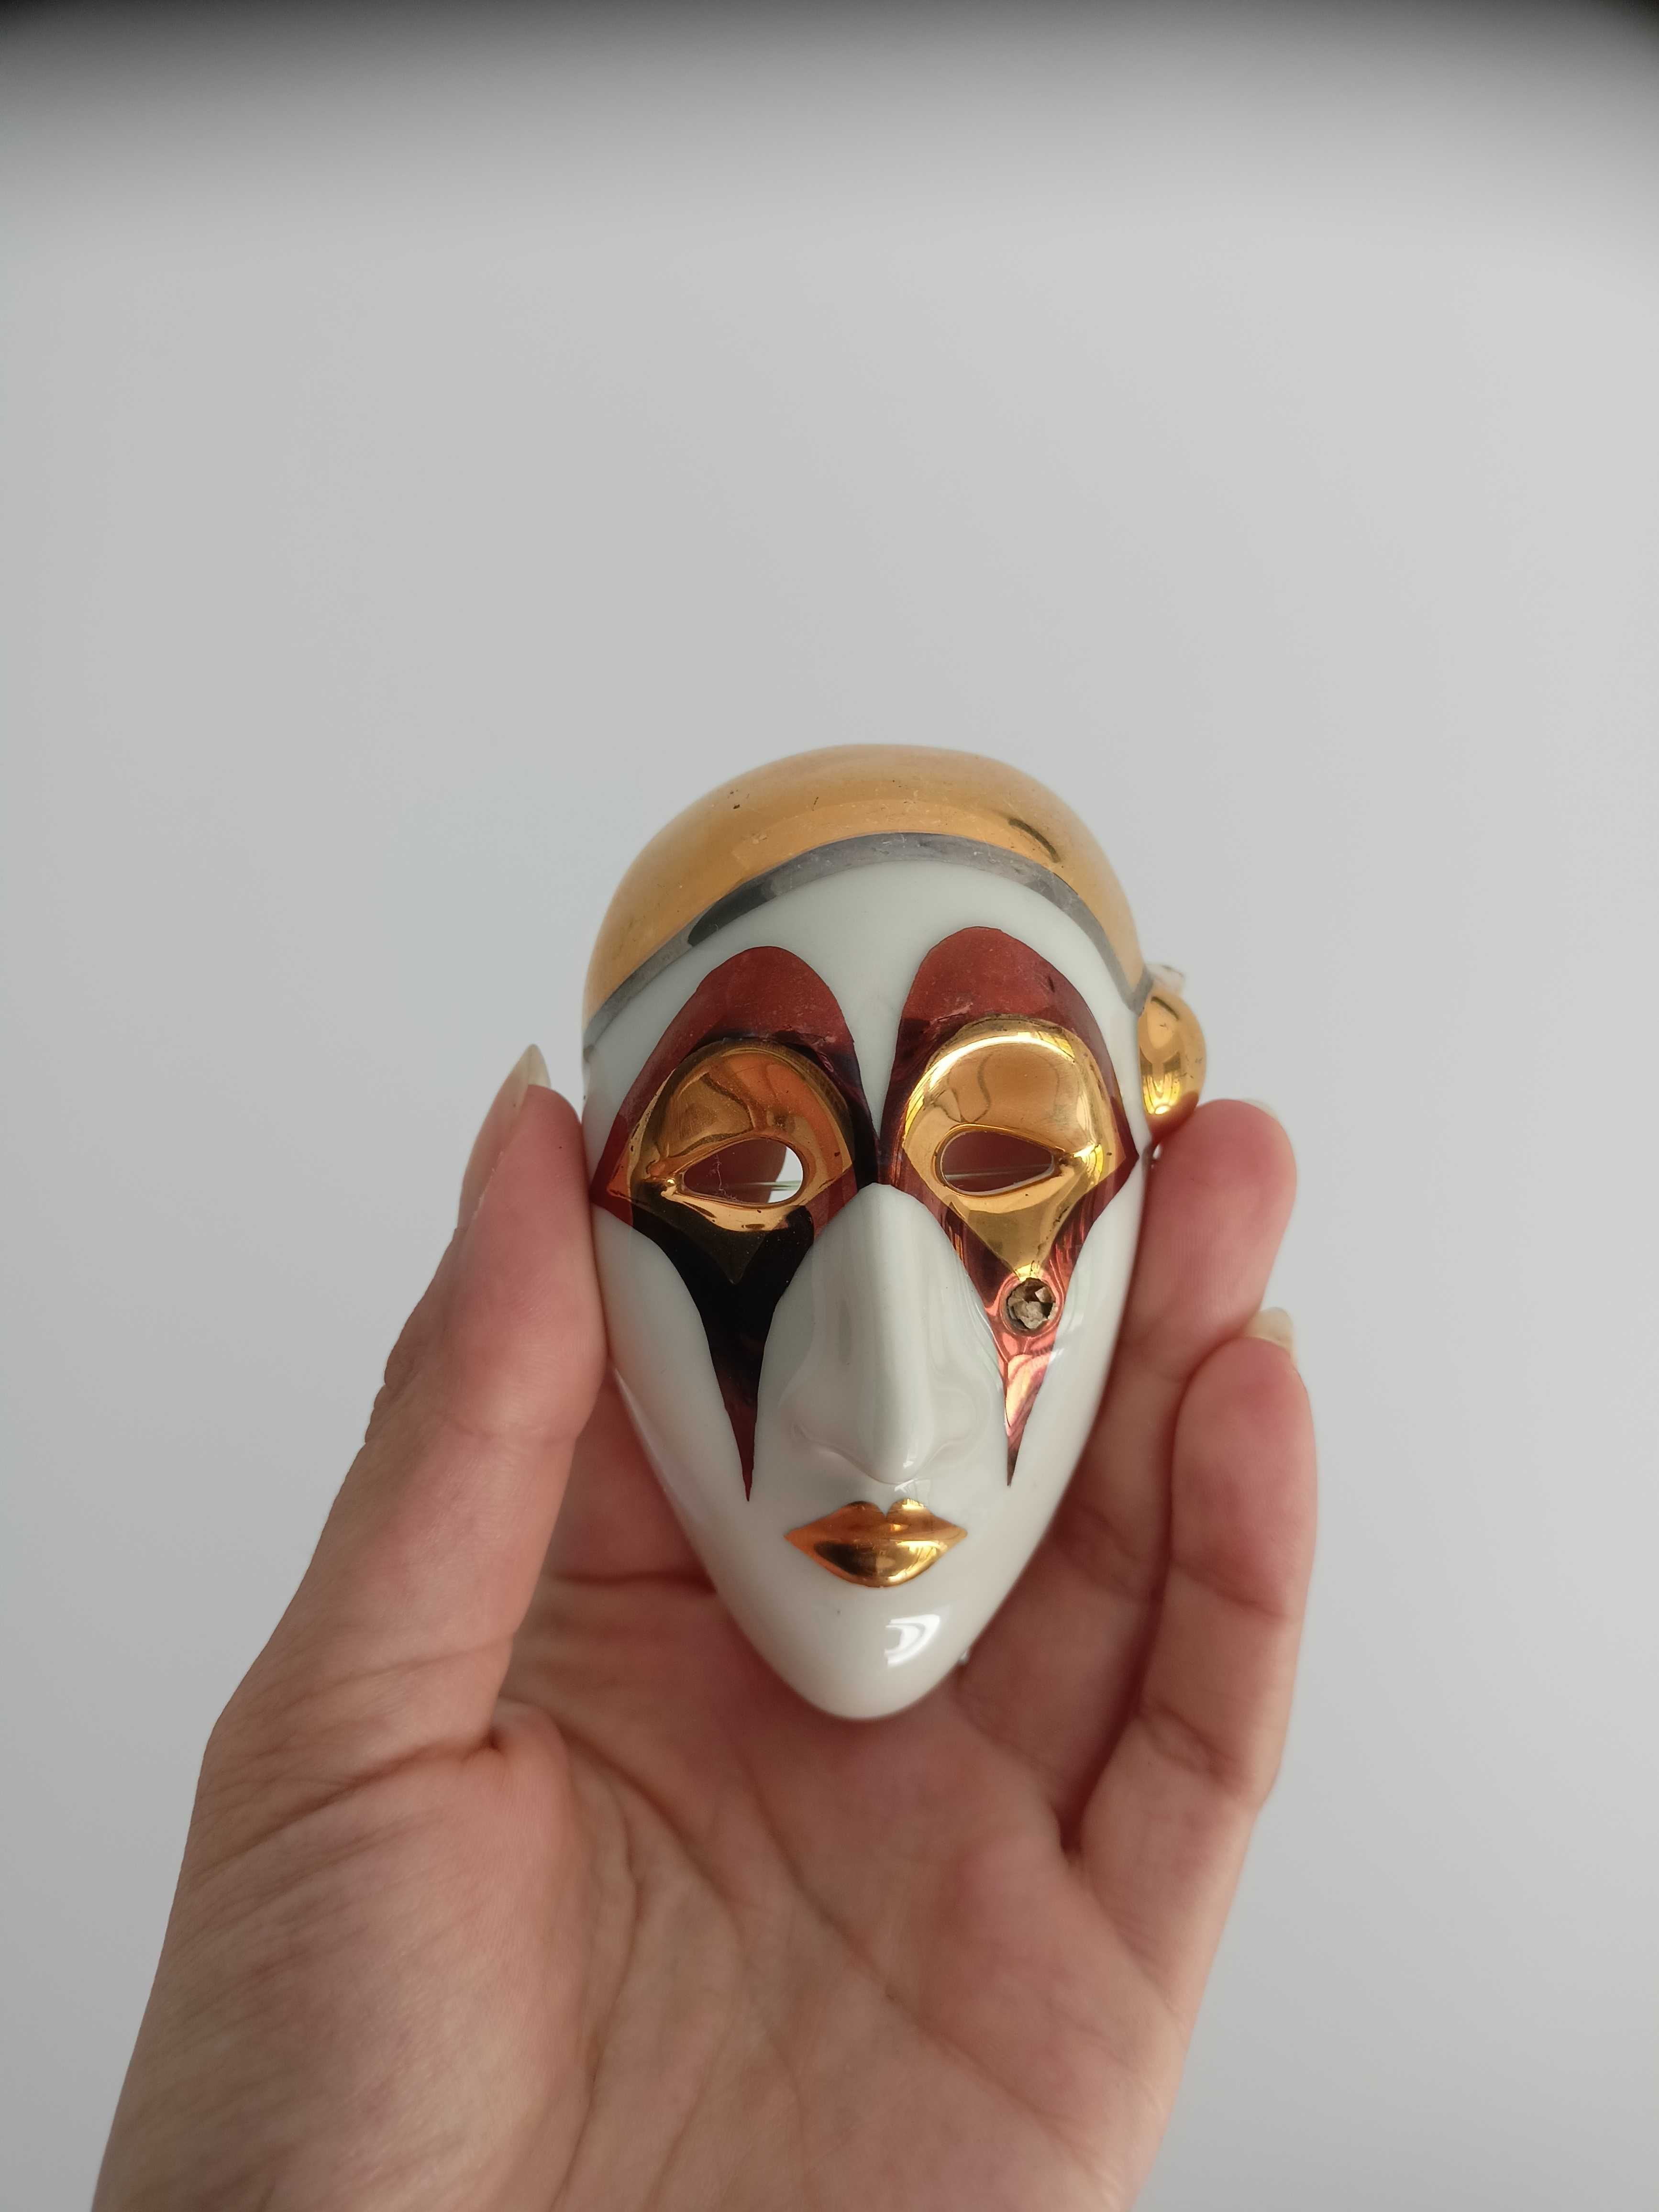 Śliczna mała maska galos porcelana